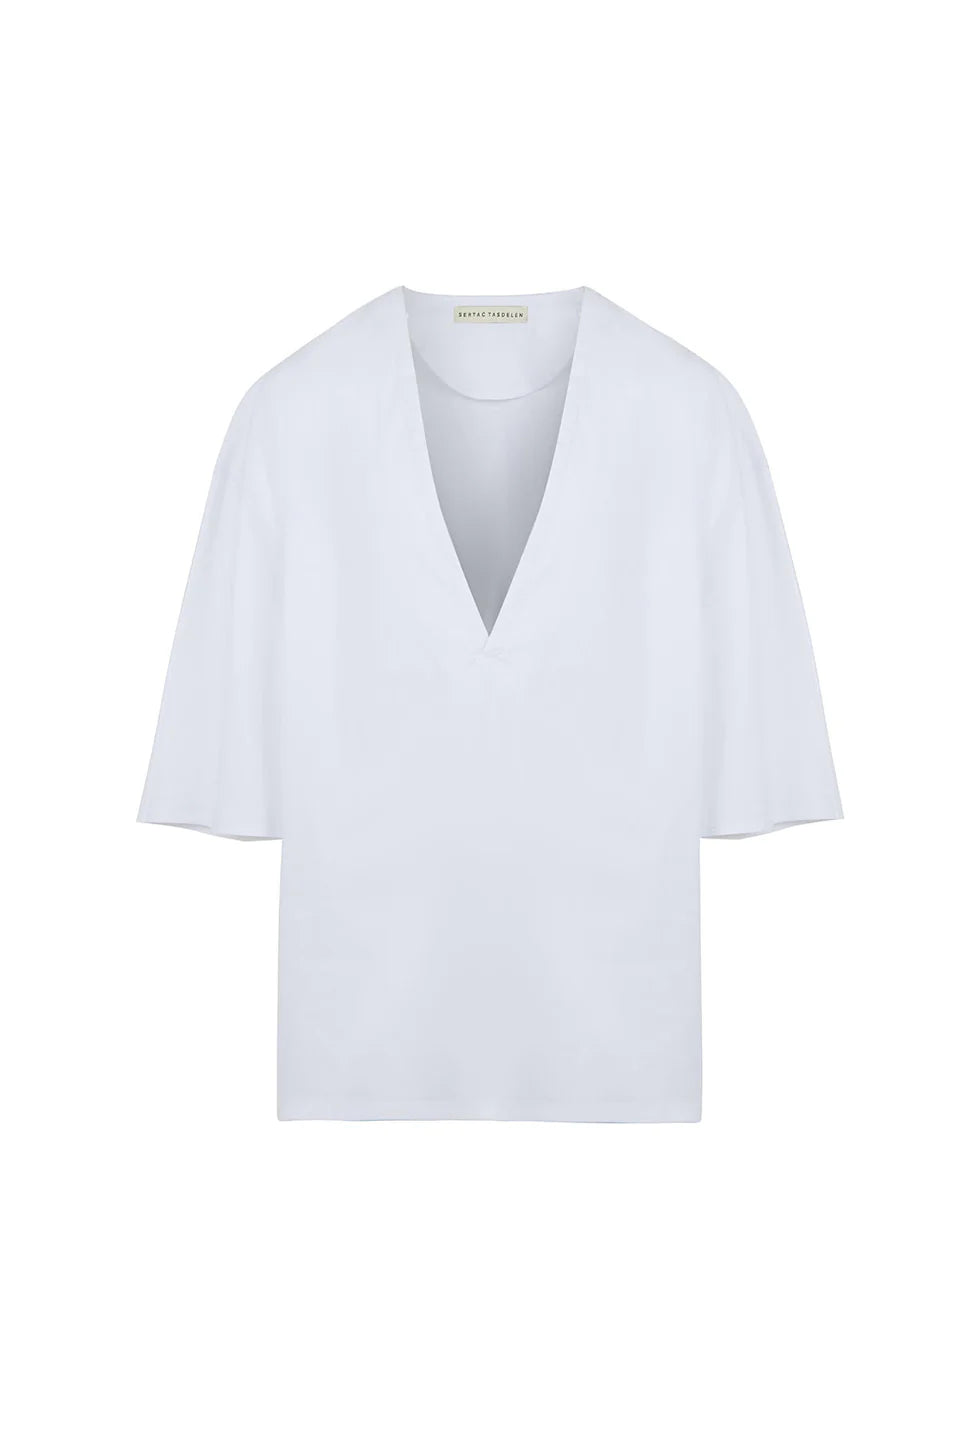 V Neck White T-Shirt: Cotton